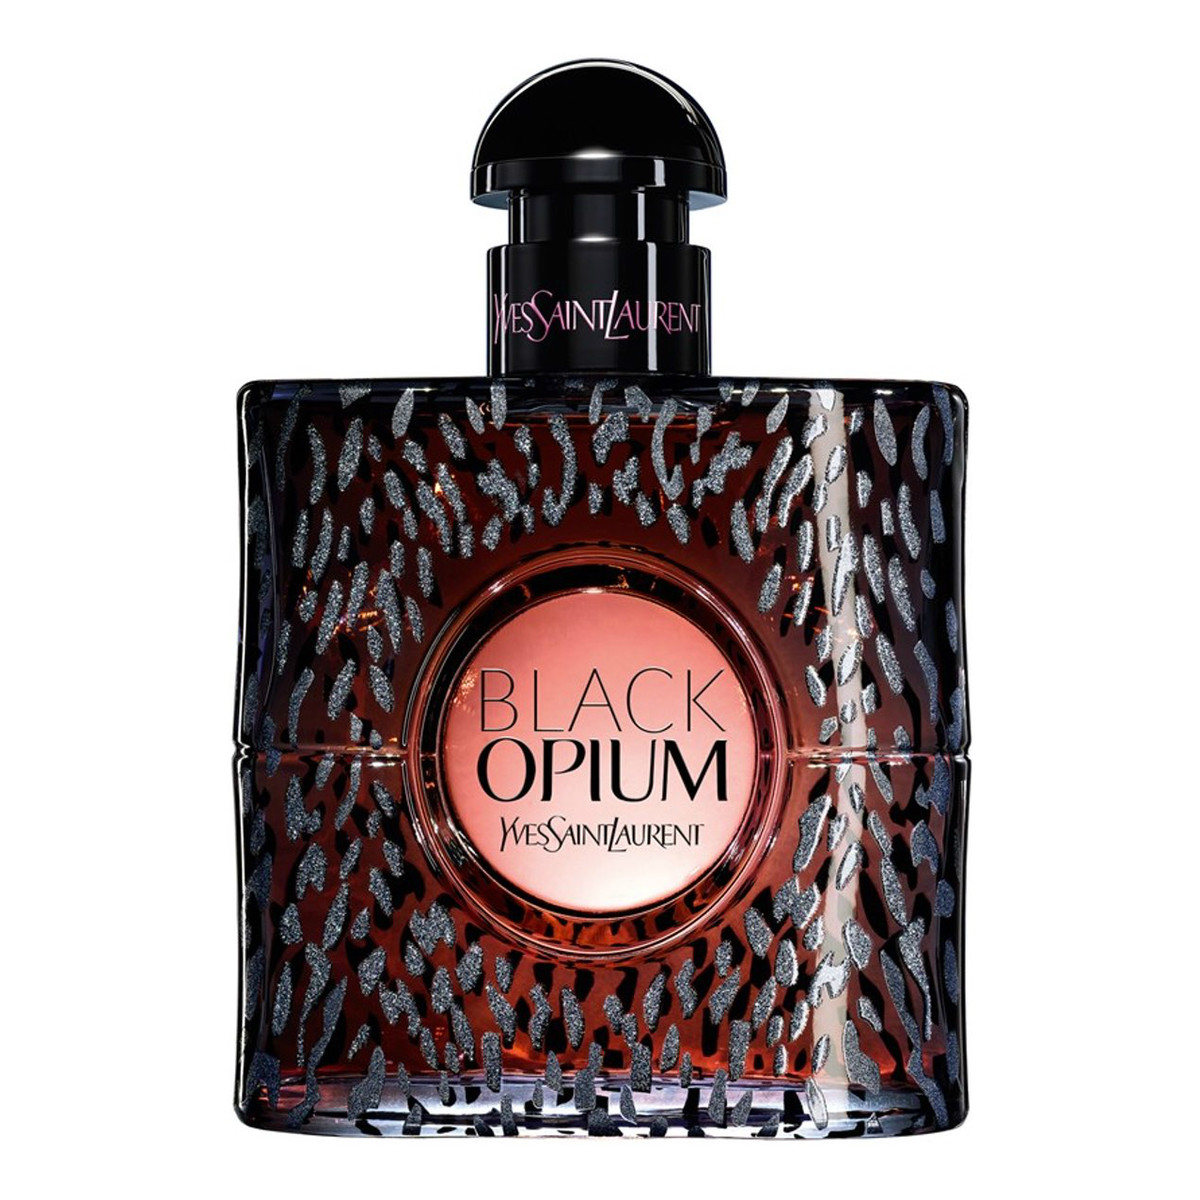 Yves Saint Laurent Black Opium Wild Edition woda perfumowana 50ml